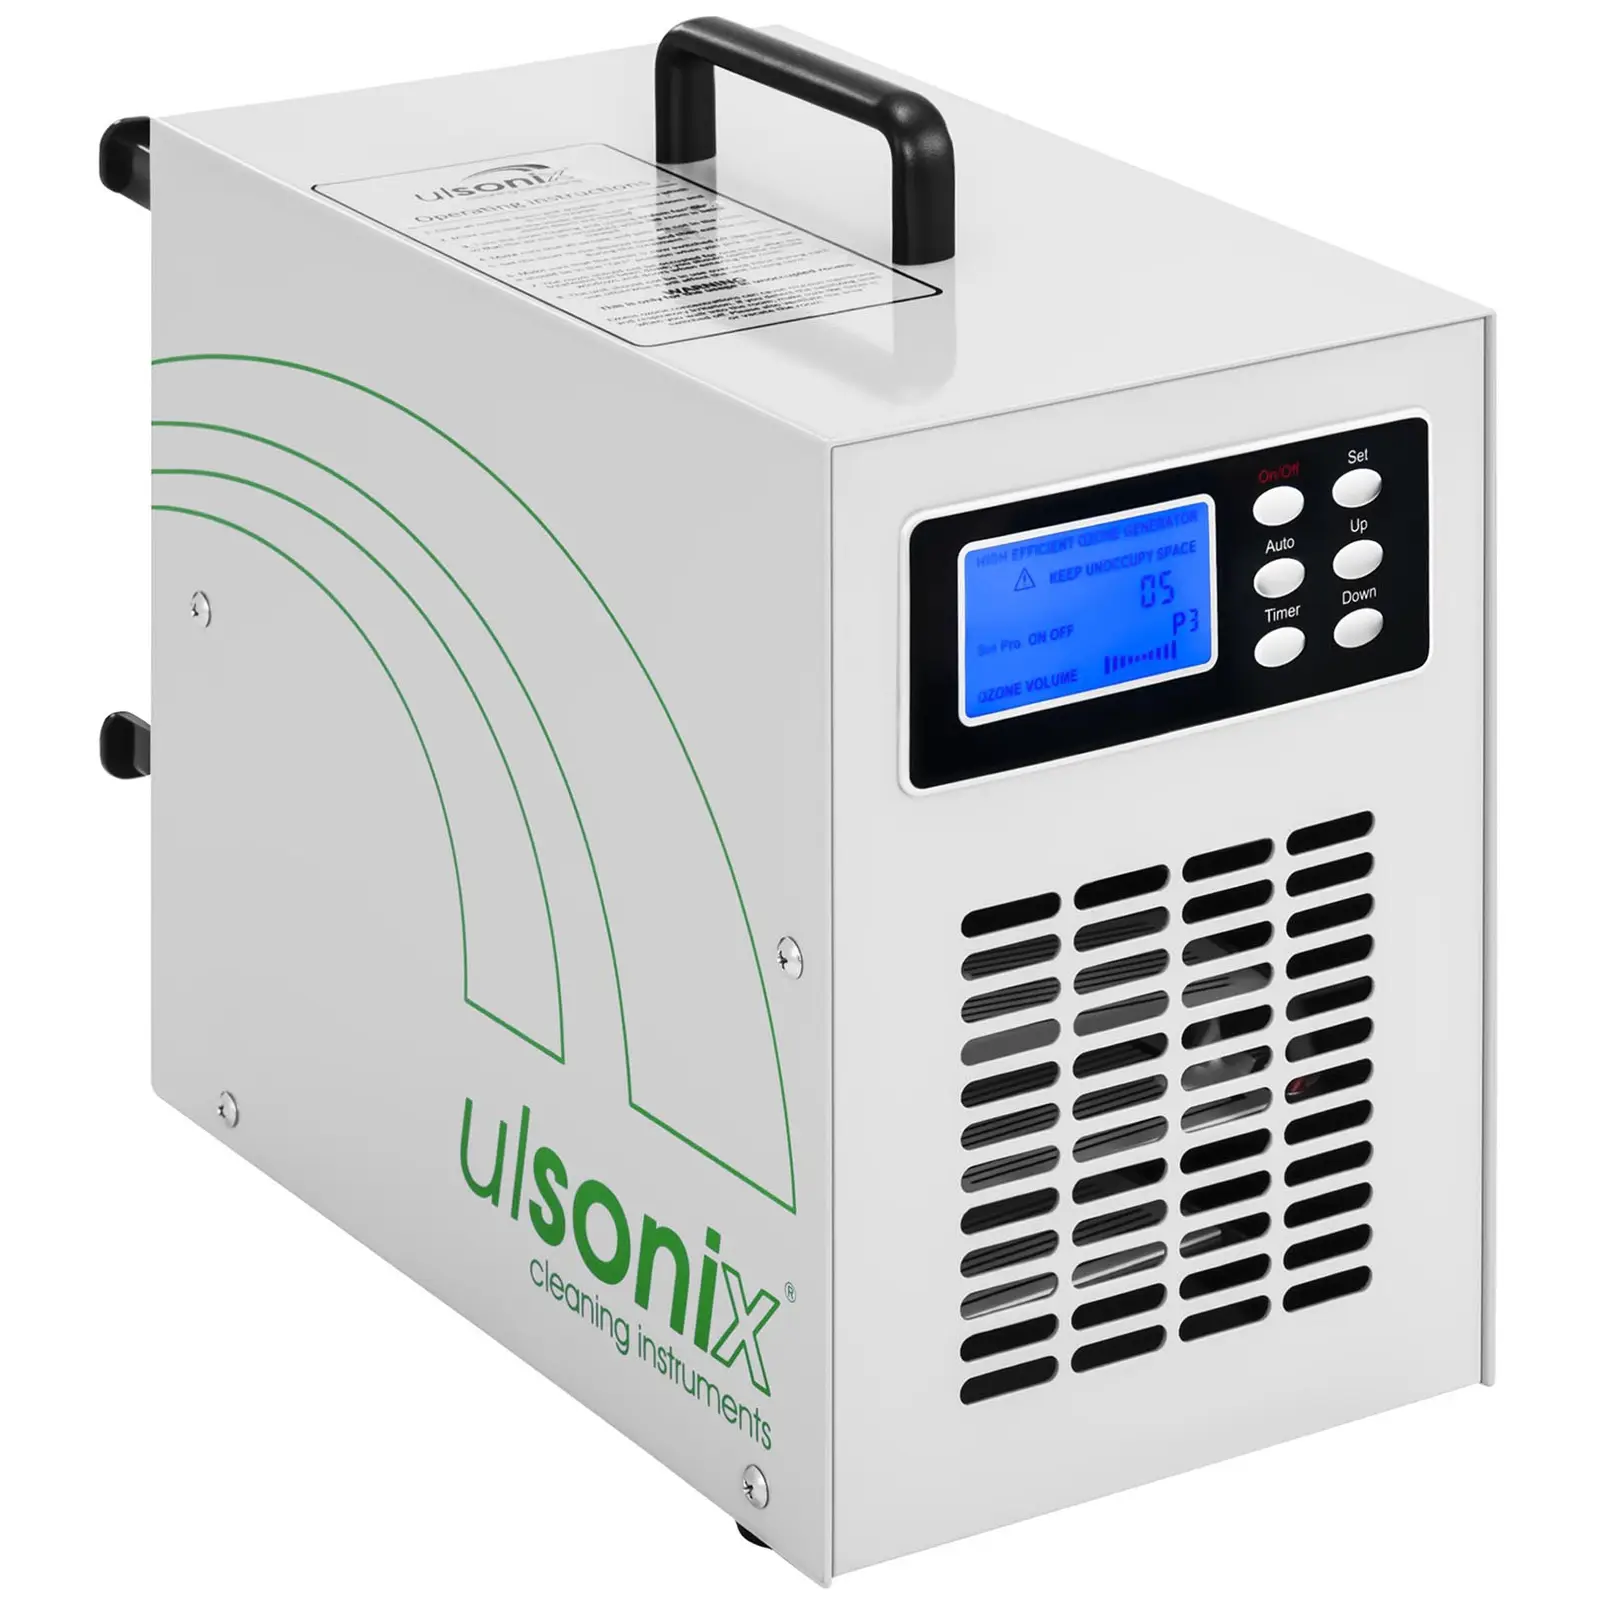 Ozonový generátor 20 000 mg/h 205 wattů digitální - Generátory ozonu ulsonix